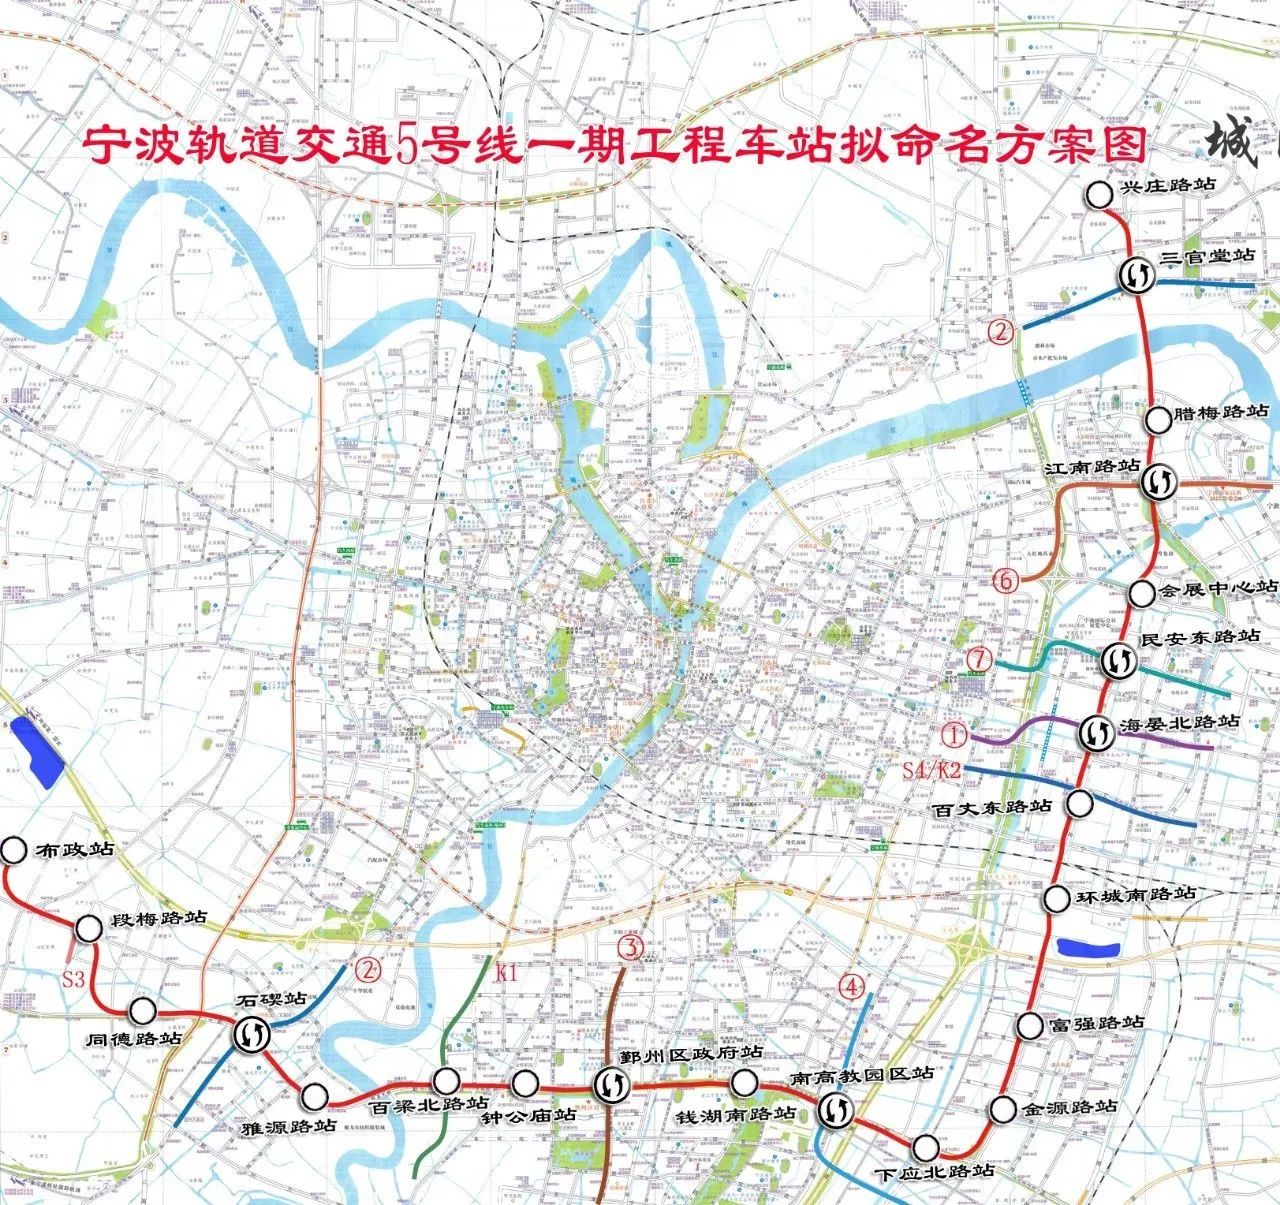 地铁5号线一期,宁波至奉化城际铁路车站拟命名方案出炉!图片